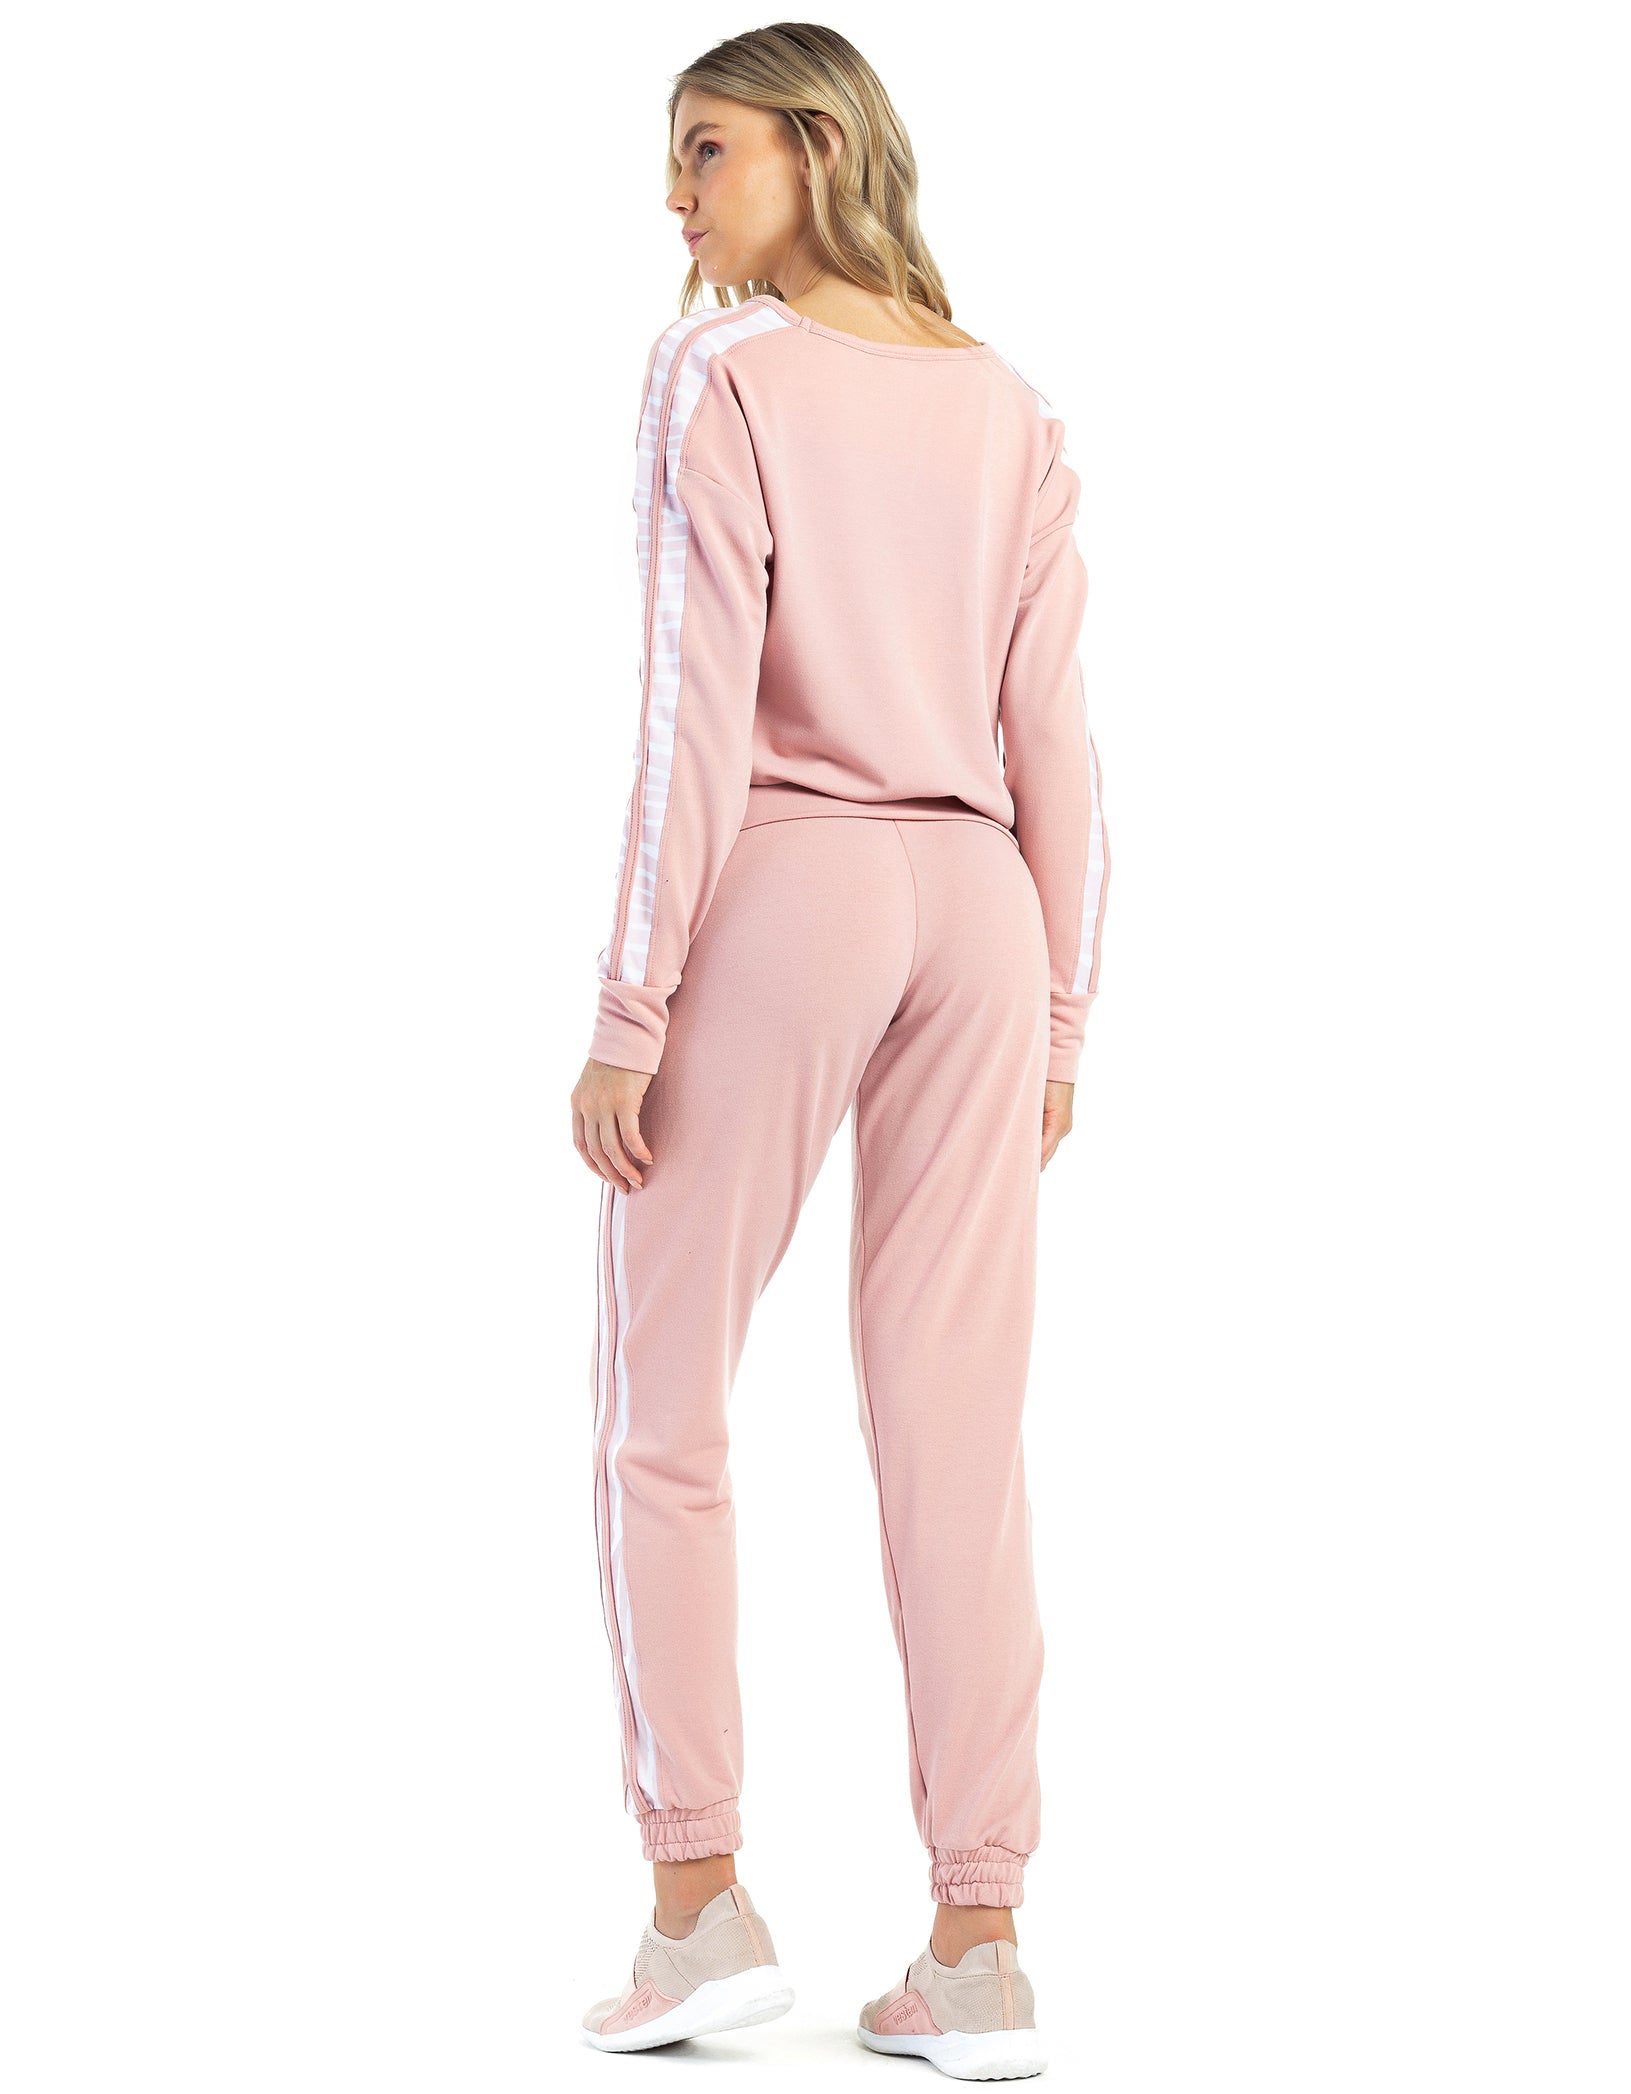 Vestem - Pants Dara pink Romance - CAL127.C0243